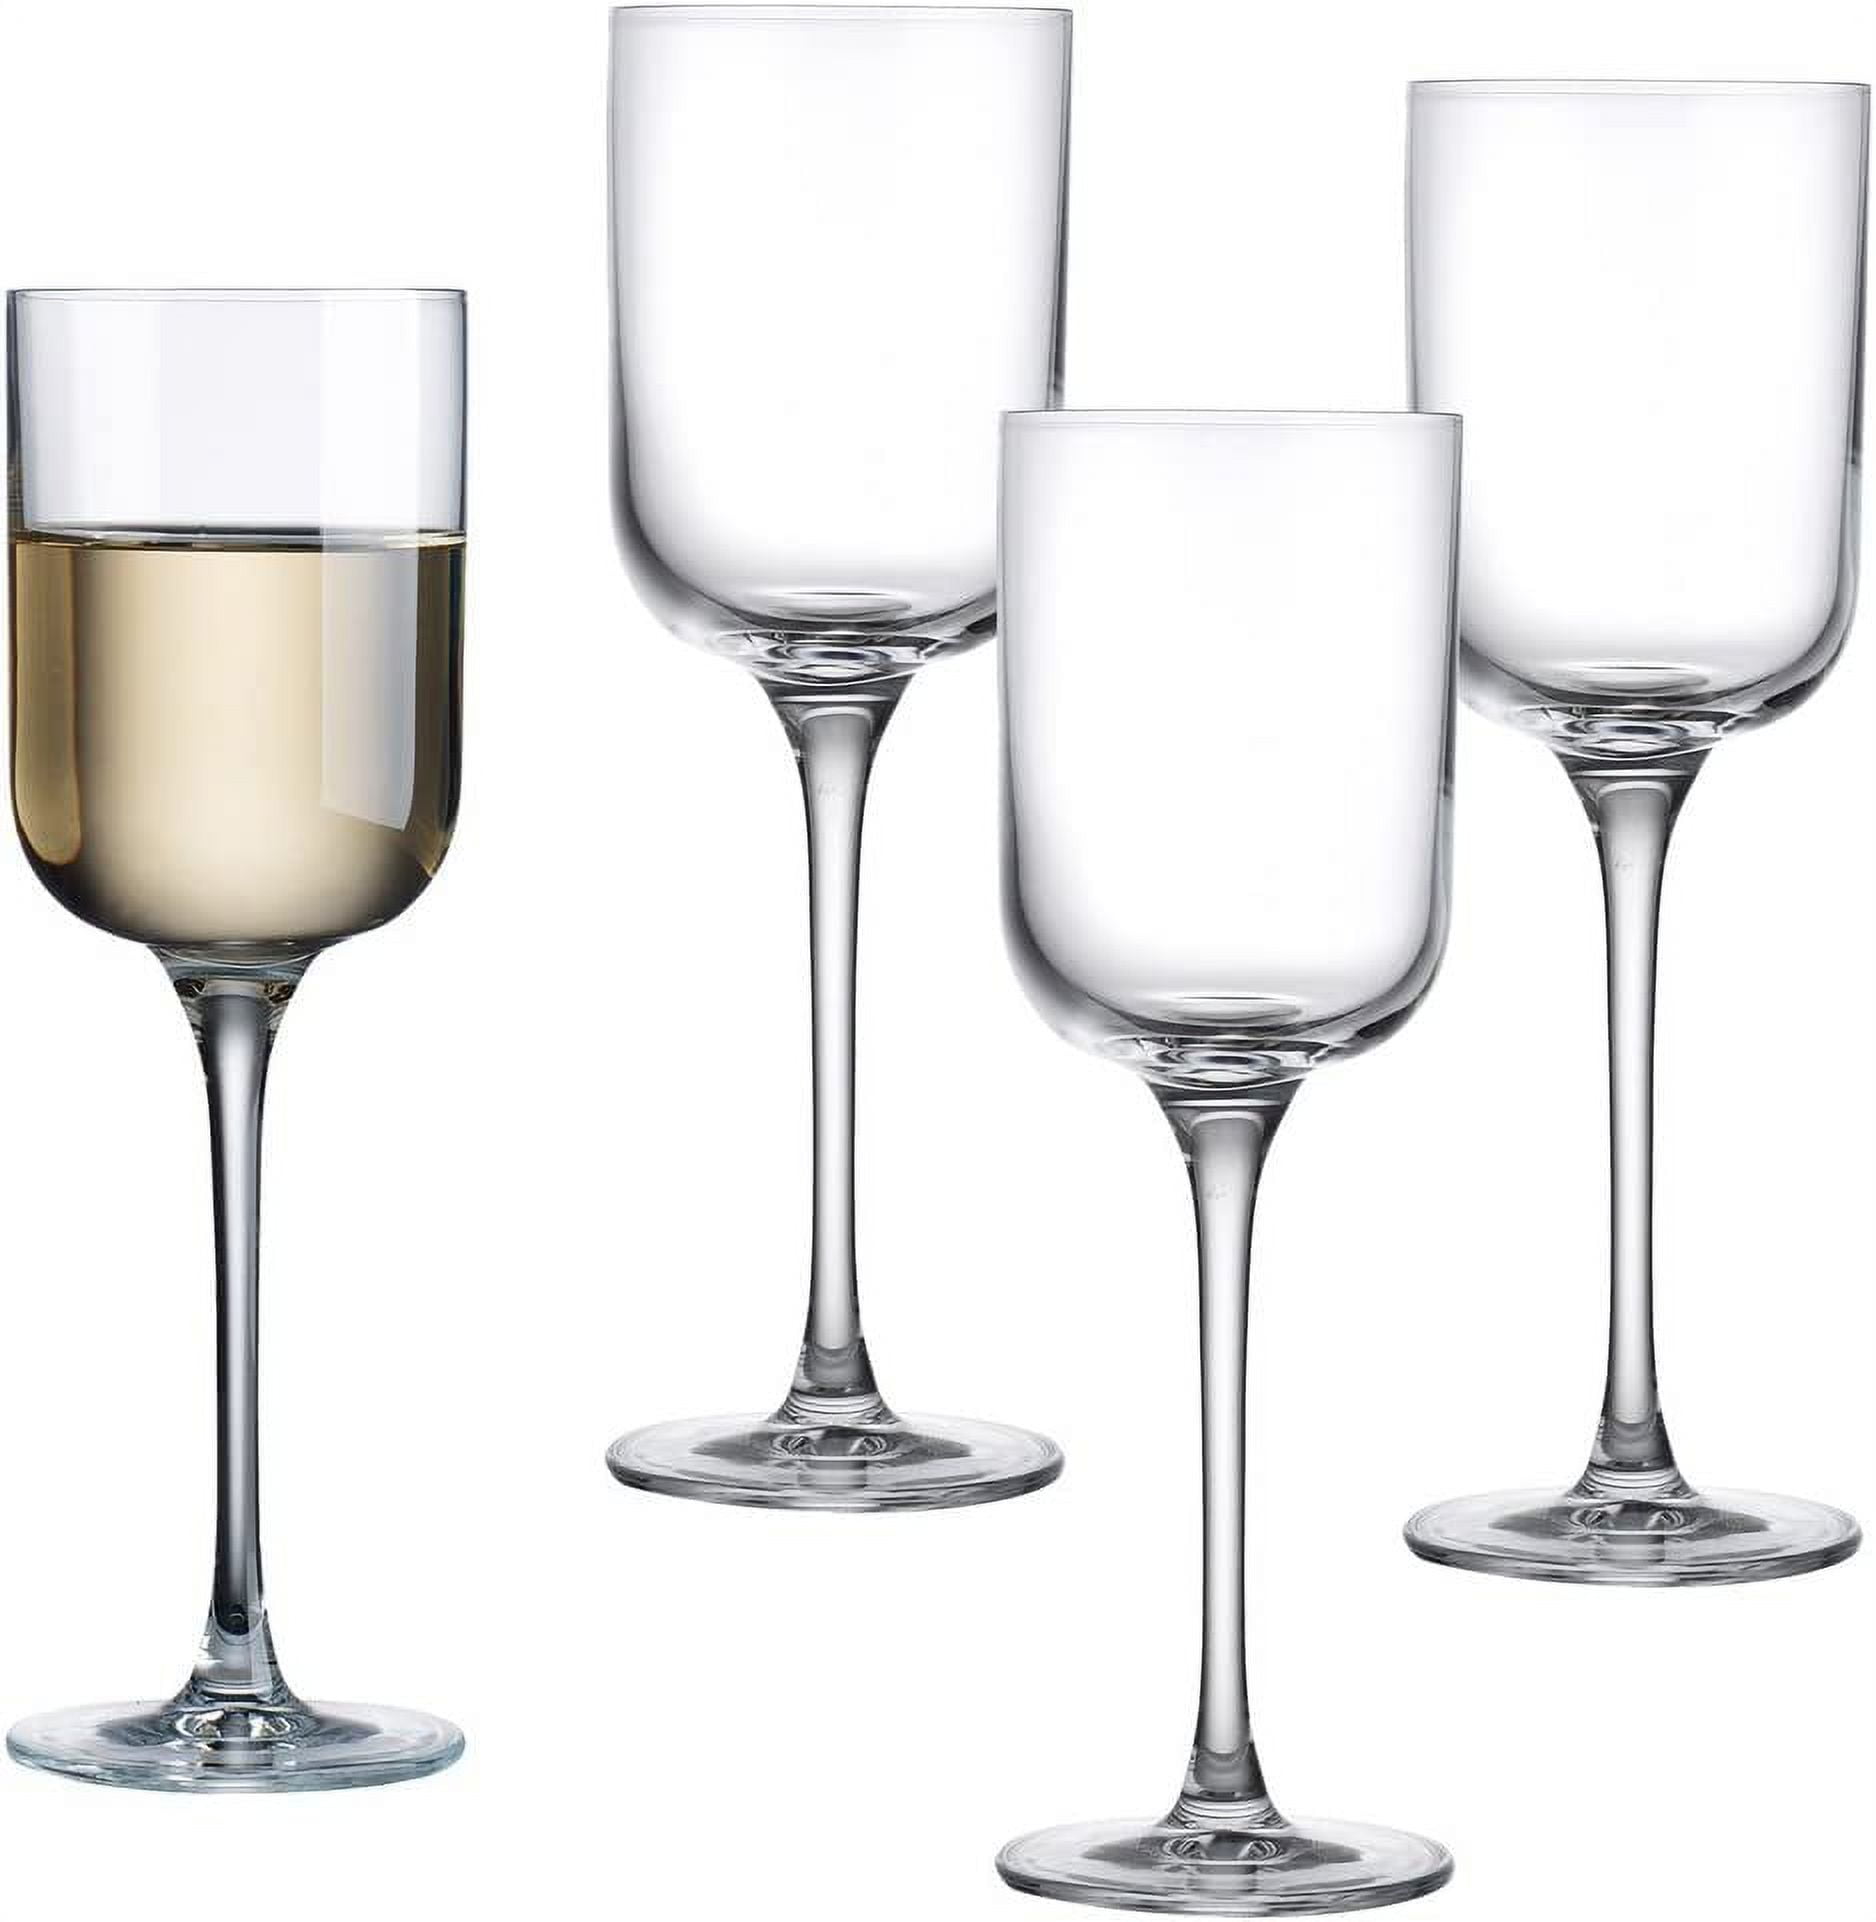 Godinger European Made Crystal White Wine Glasses Set of 4 12 Oz